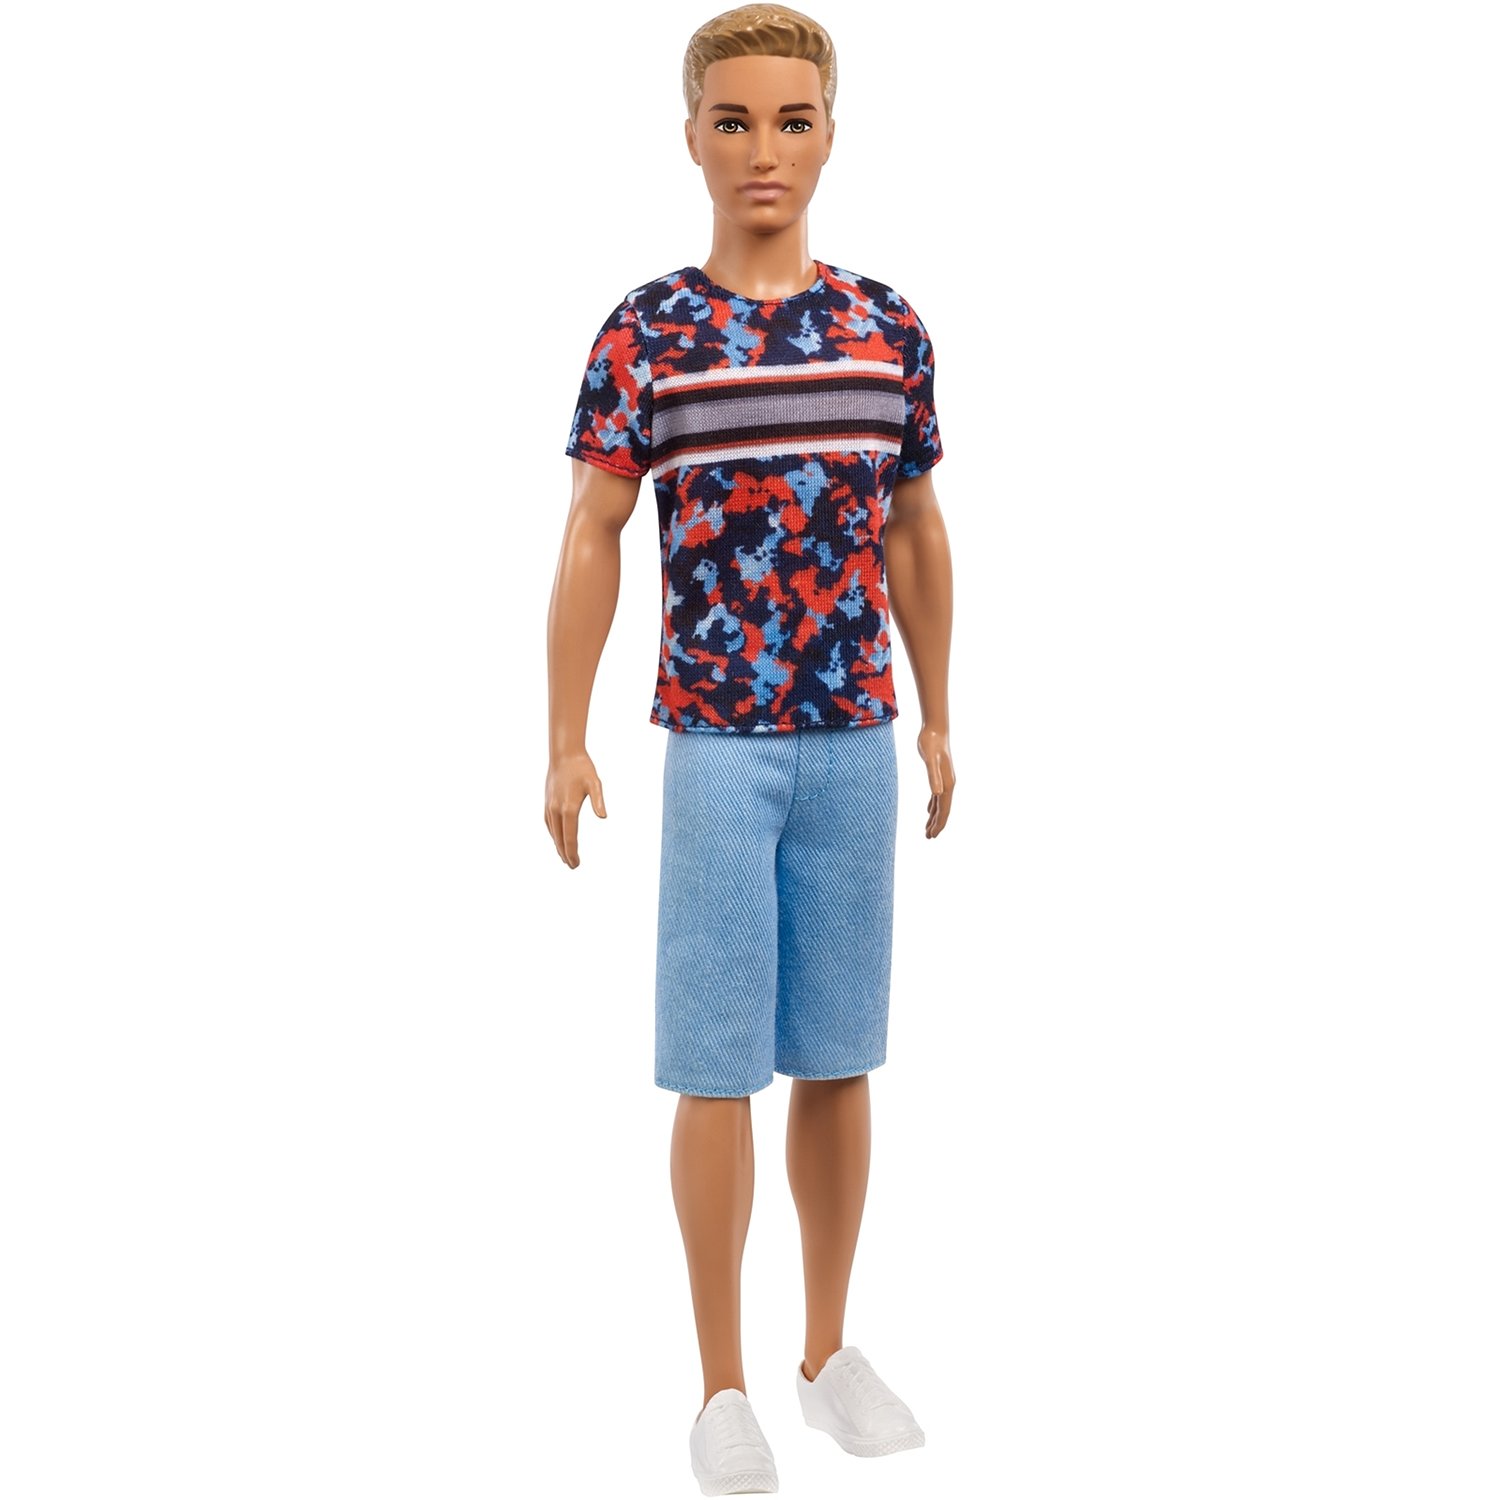 Кукла Barbie Игра с модой Кен, 30 см, FXL65